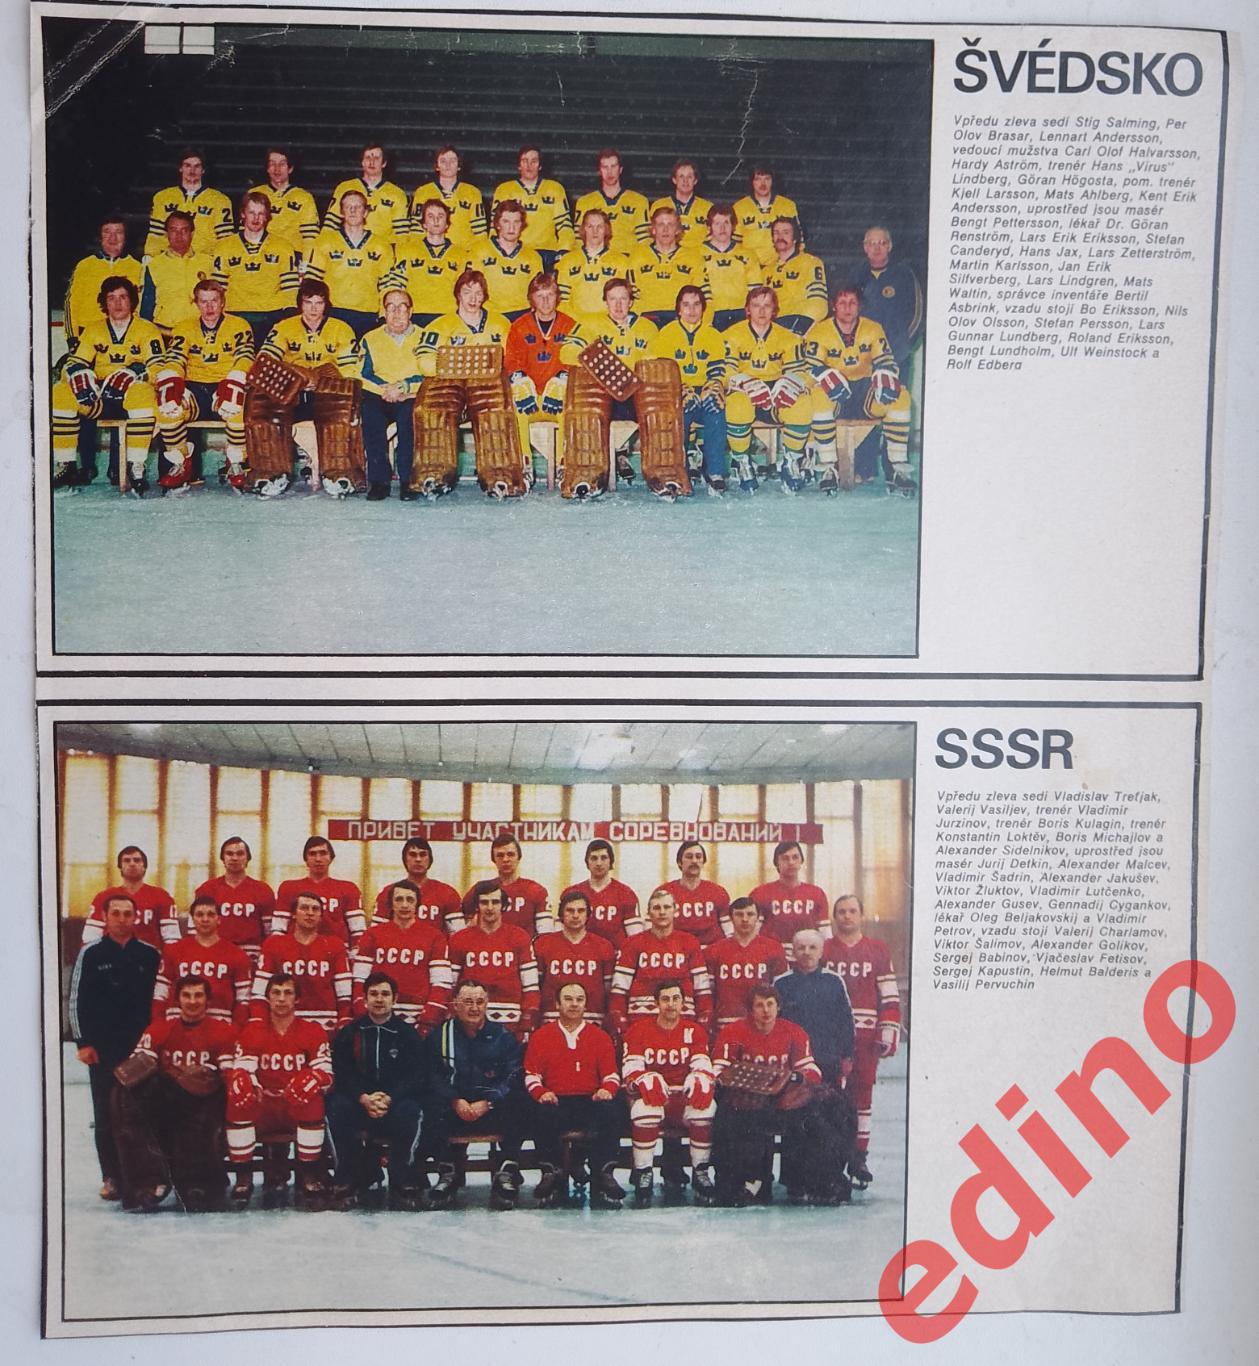 журнал Стадион участники ЧМ по хоккею 1977